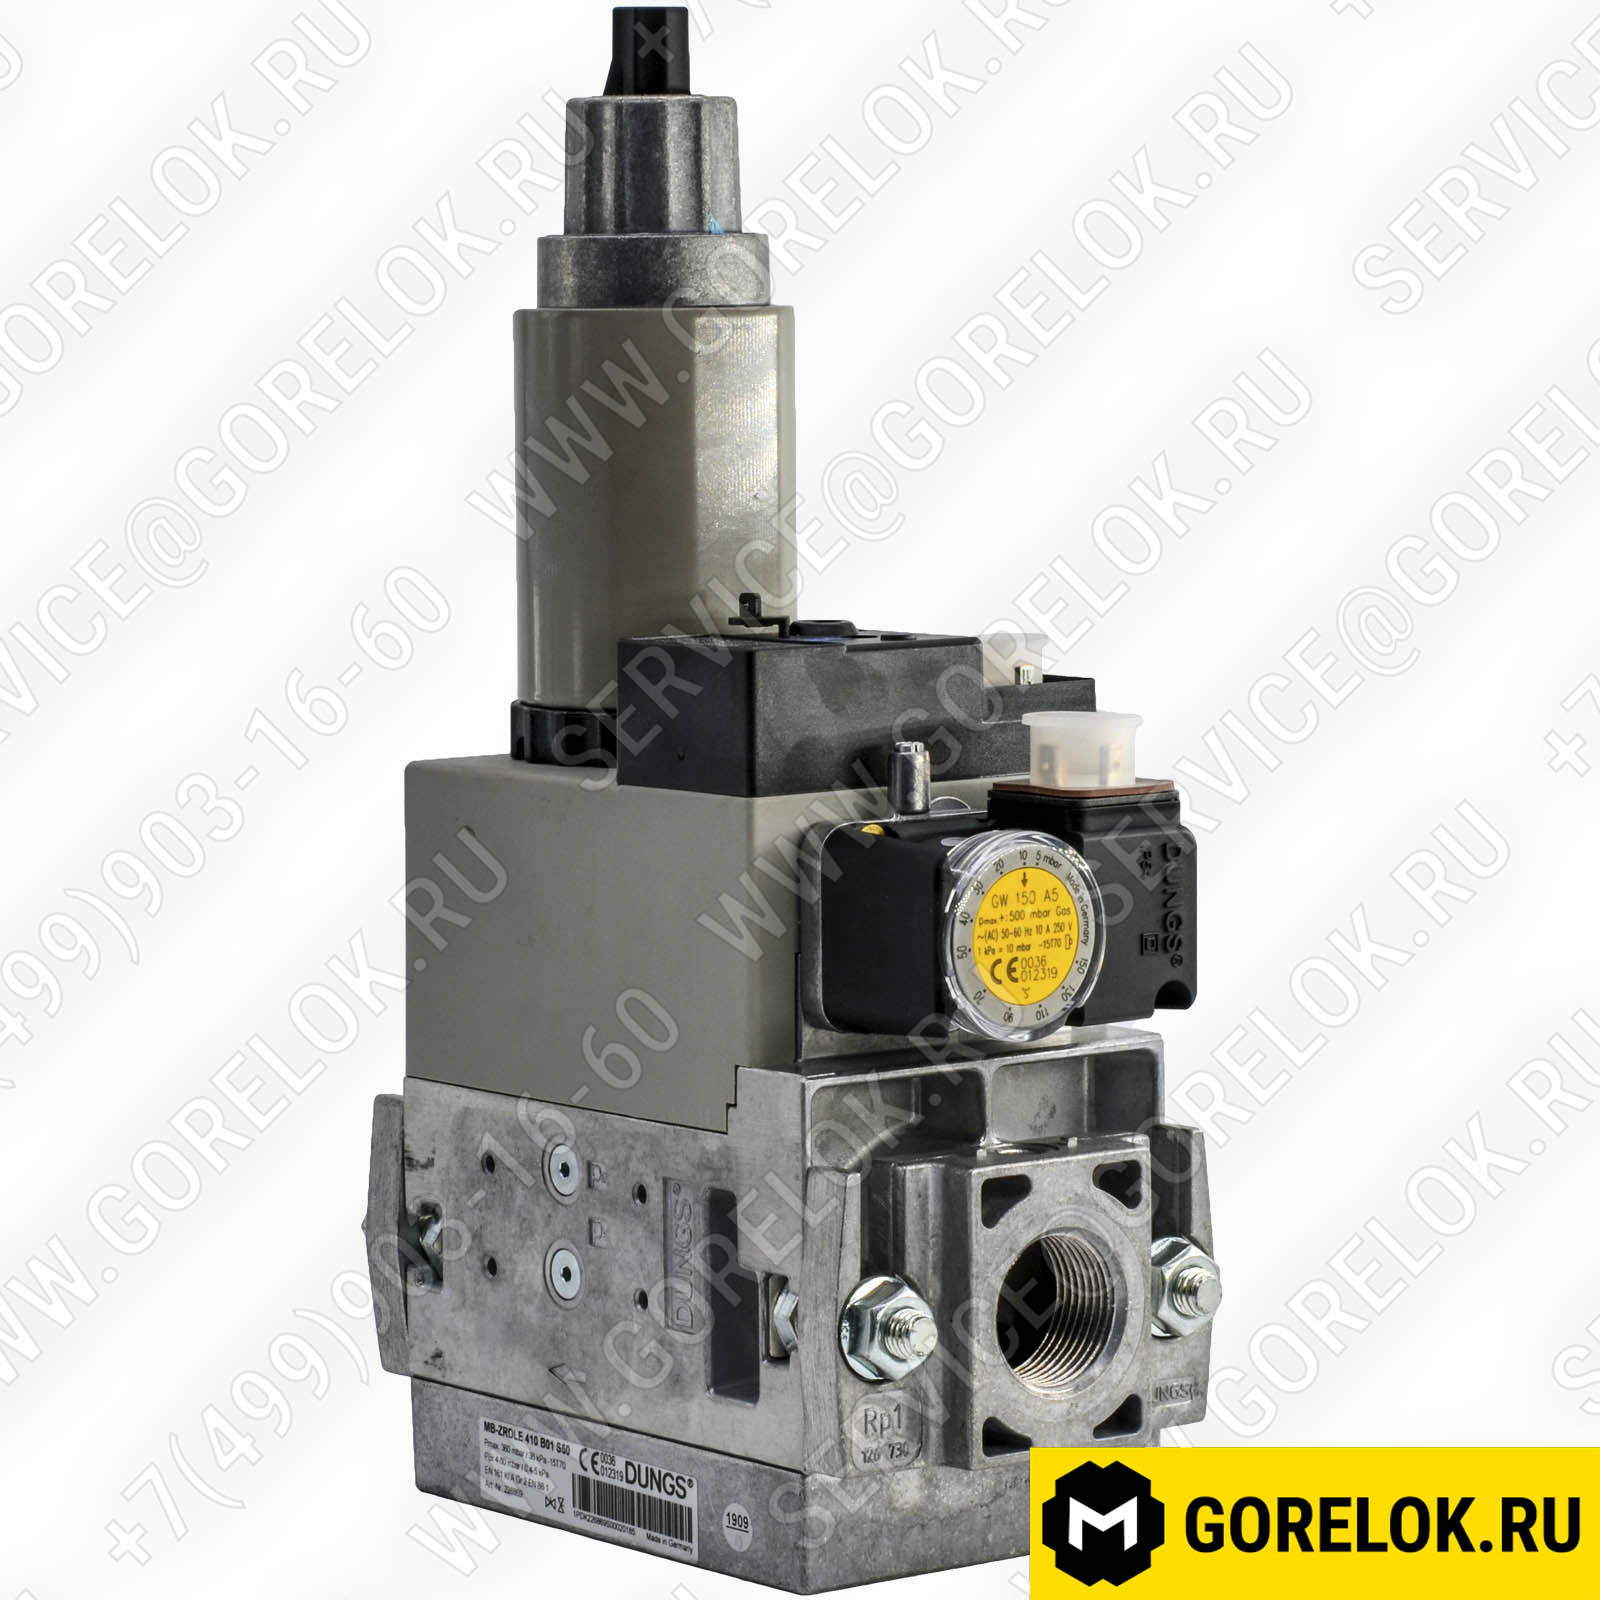 Газовый клапан MB-ZRDLE 410 B01 S50 арт.04034440 цена, купить